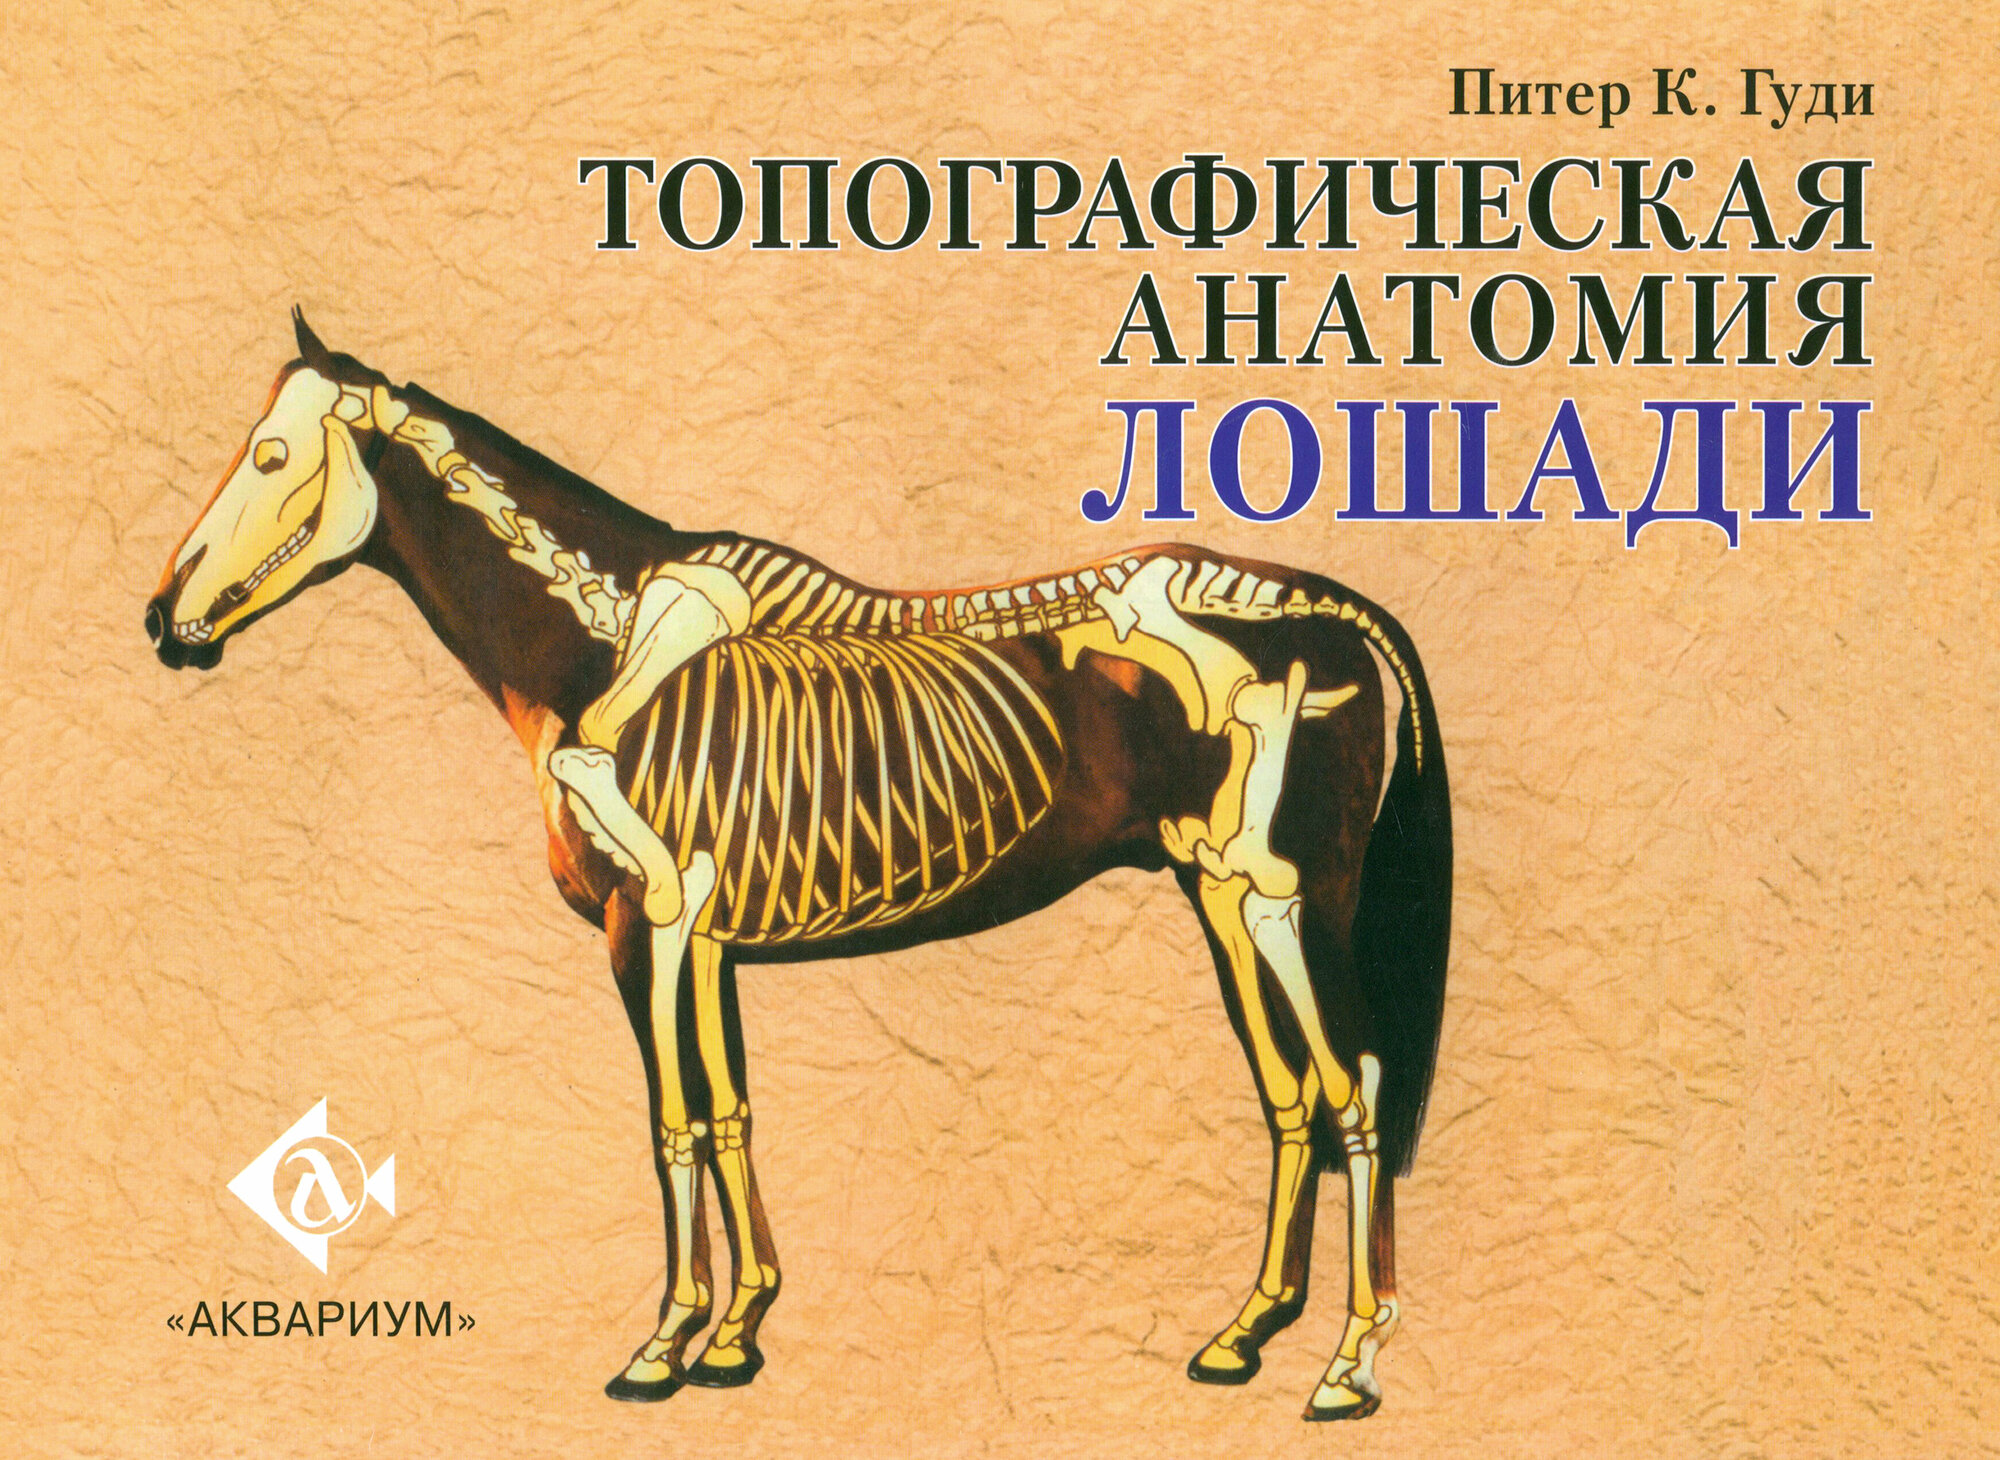 Топографическая анатомия лошади - фото №1